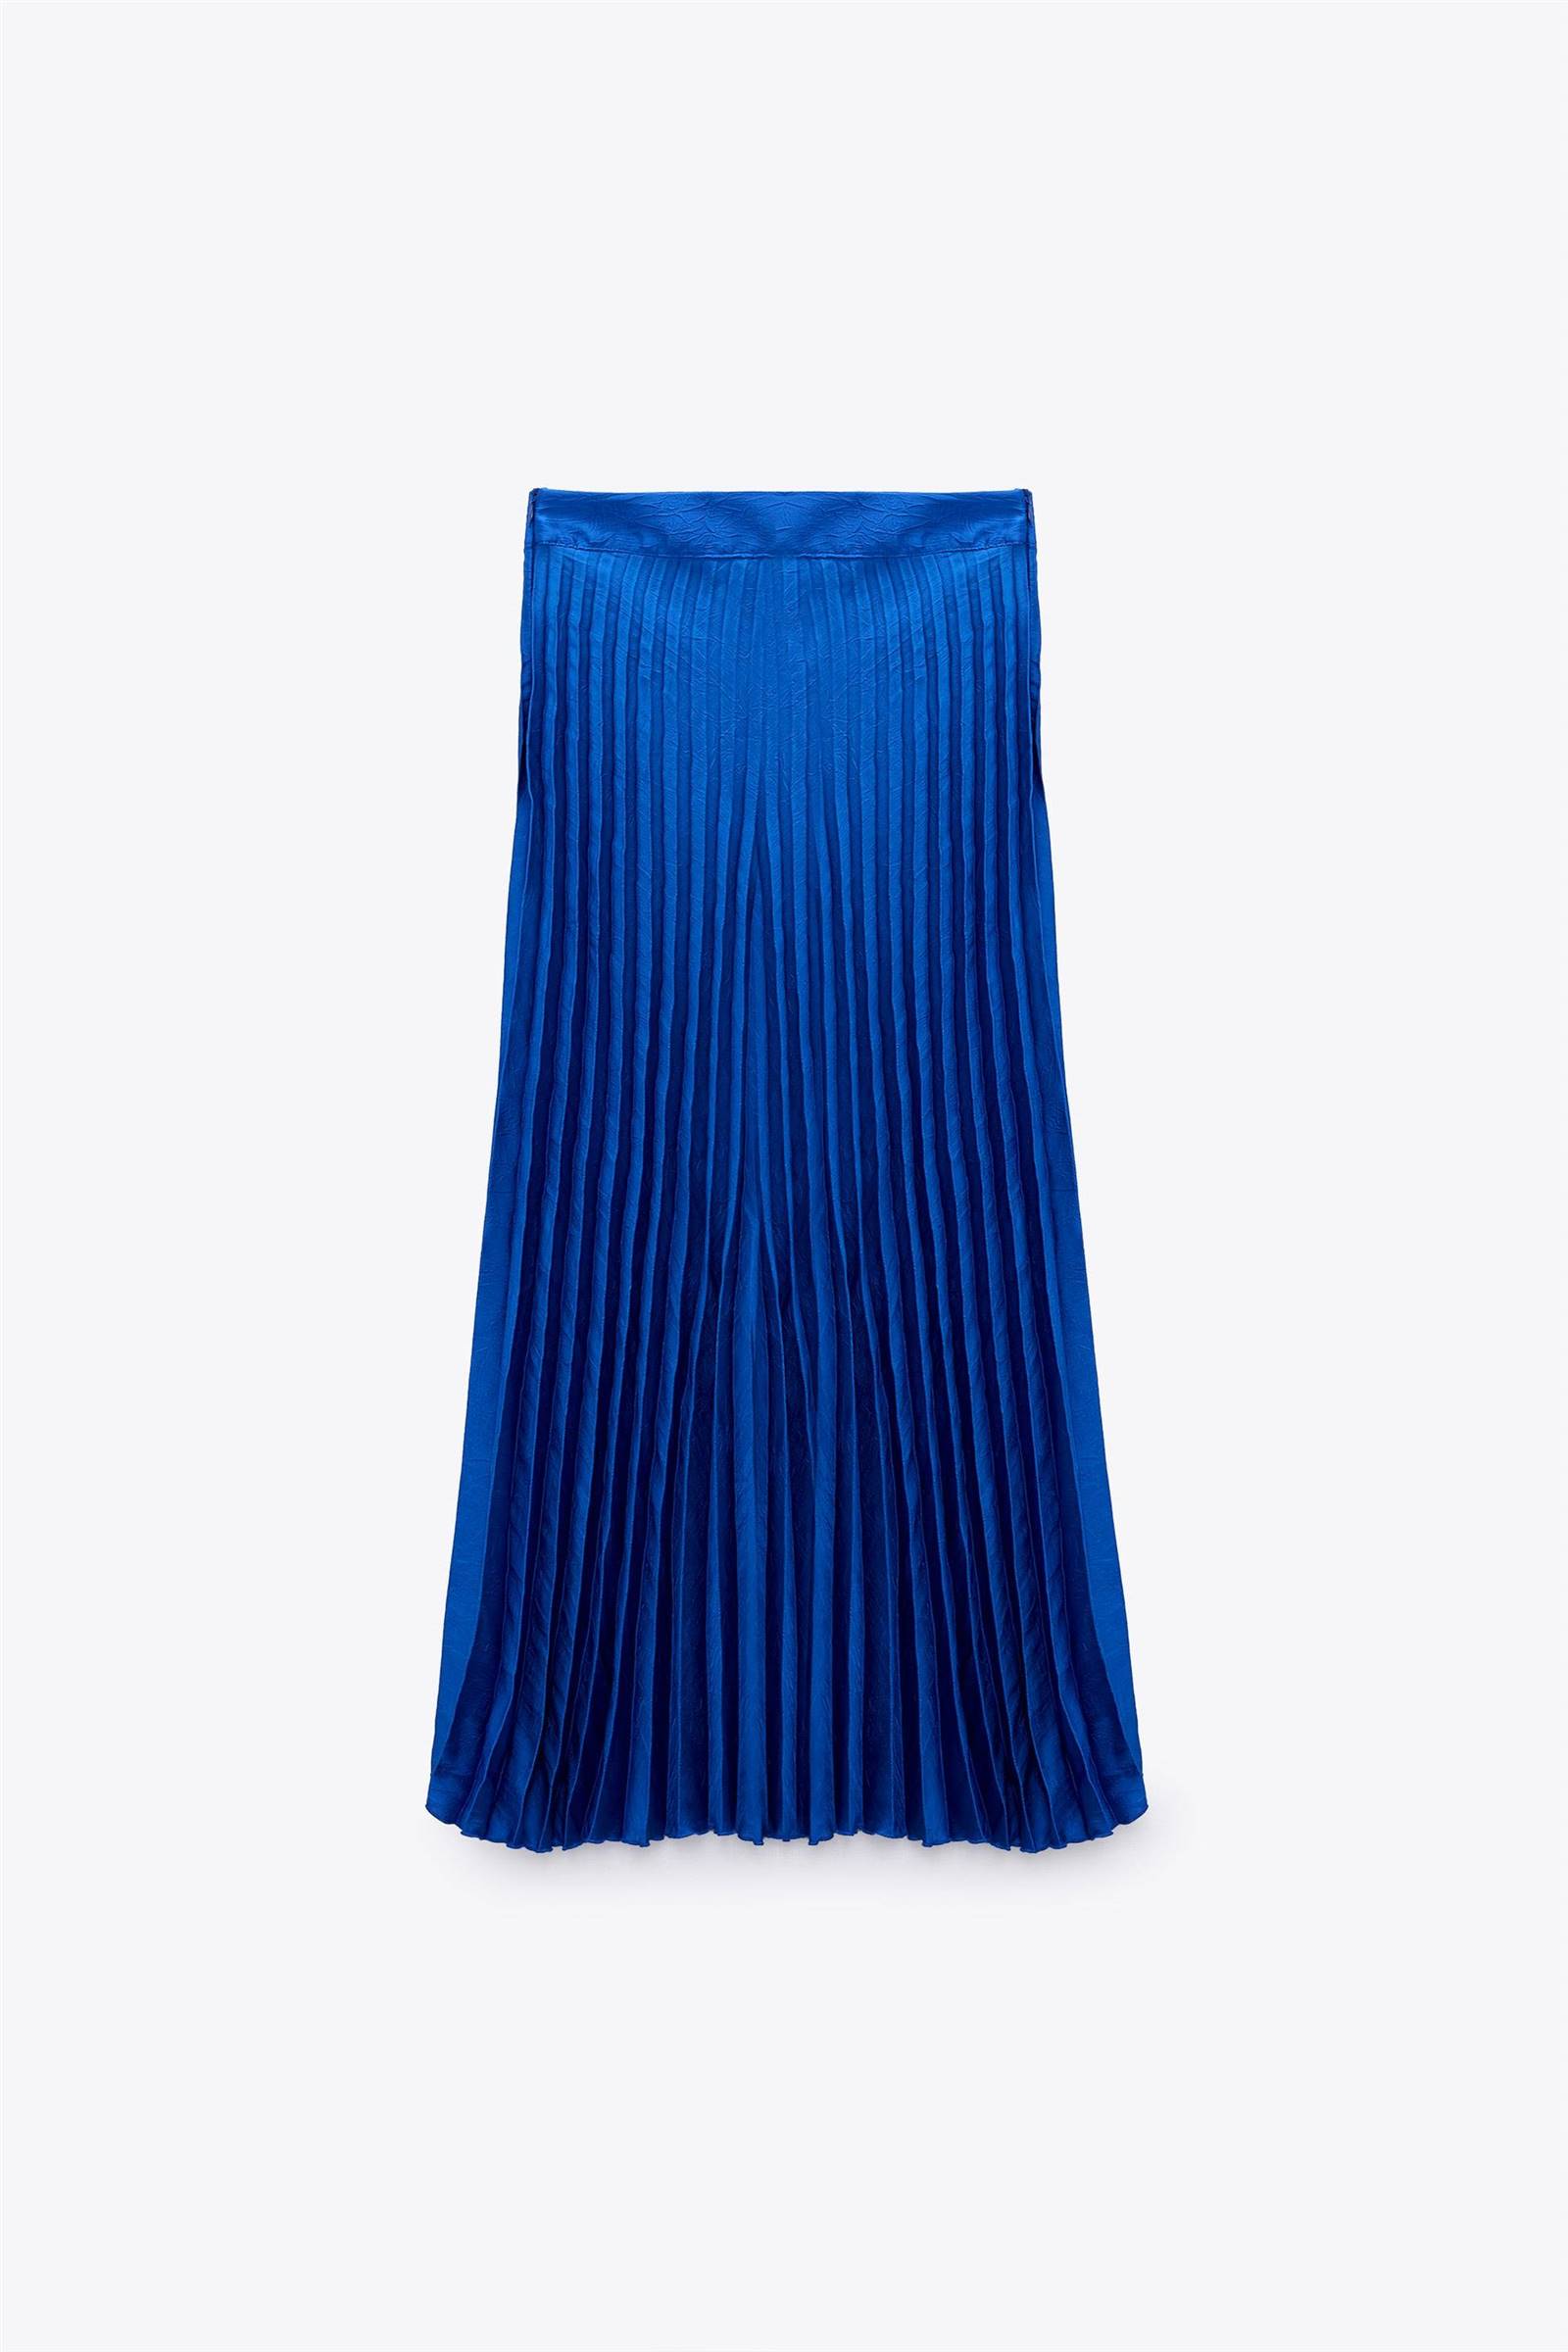 Falda midi plisada de Zara